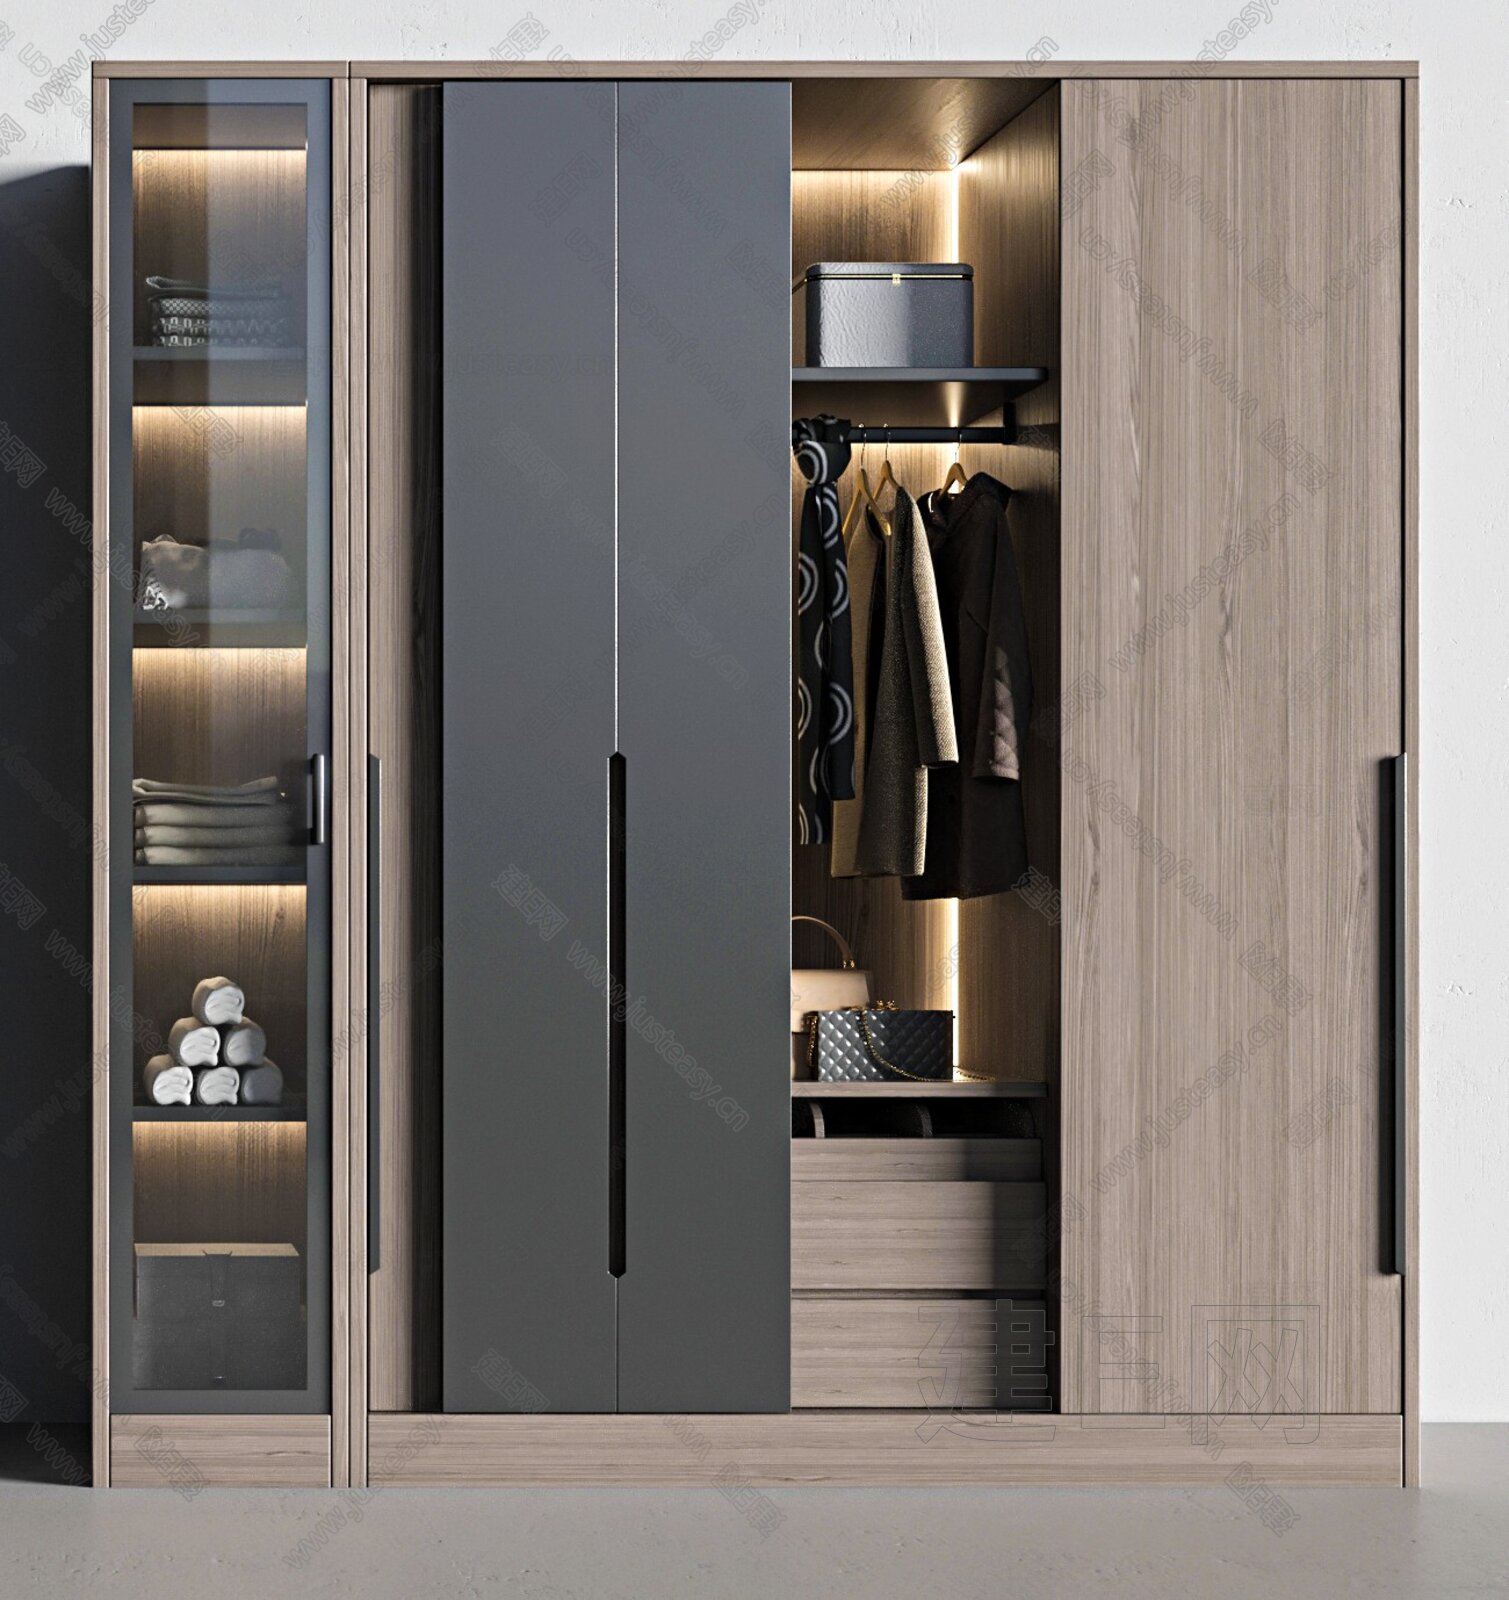 风格多样化的轻奢极简全铝衣柜设计大全_轻奢极简全铝衣柜